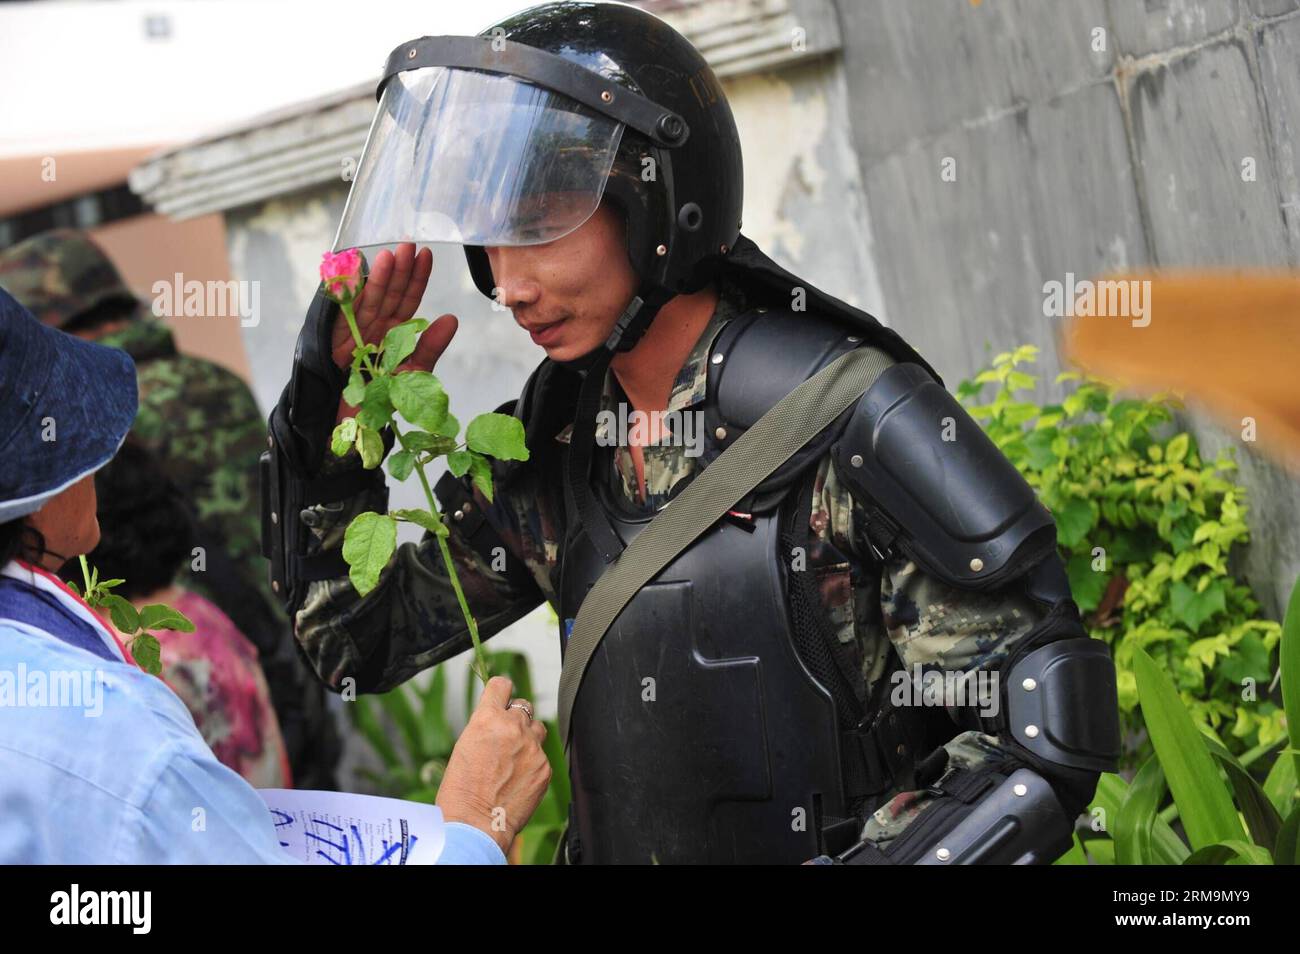 (140527) -- BANGKOK, 27 maggio 2014 (Xinhua) -- Un soldato dell'esercito thailandese riceve un fiore da un sostenitore del colpo di stato militare a Bangkok, Thailandia, 27 maggio 2014. Il capo dell'esercito thailandese, il generale Prayuth Chan-ocha, è stato approvato dal monarca thailandese lunedì come capo del Consiglio nazionale per la pace e l'ordine. (Xinhua/Rachen Sageamsak) THAILANDIA-BANGKOK-UNREST-ARMY PUBLICATIONxNOTxINxCHN Bangkok maggio 27 2014 XINHUA un soldato dell'esercito thailandese riceve un fiore da un sostenitore del colpo di stato militare a Bangkok paese tailandese maggio 27 2014 Capo dell'esercito thailandese generale Prayuth Chan OCHA ciò che è stato approvato dal monarca tailandese lunedì come capo della Natio Foto Stock